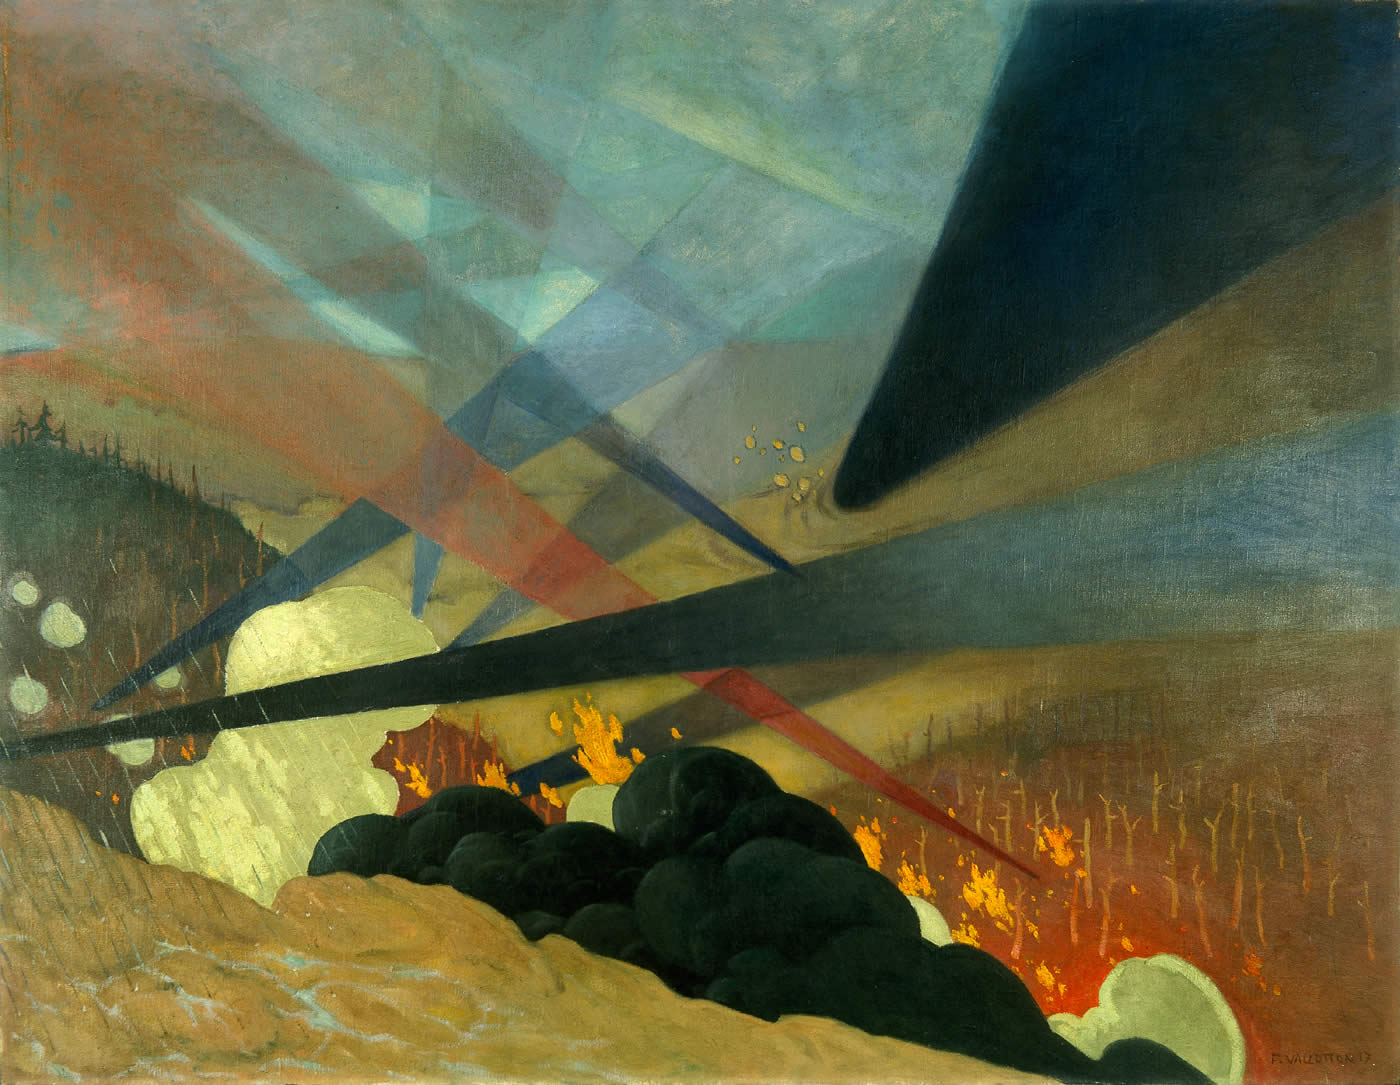 Verdun. Tableau de guerre interprété, projections colorées noires, bleues et rouges, terrains dévastés, nuées de gaz. Félix Vallotton (1865-1925)